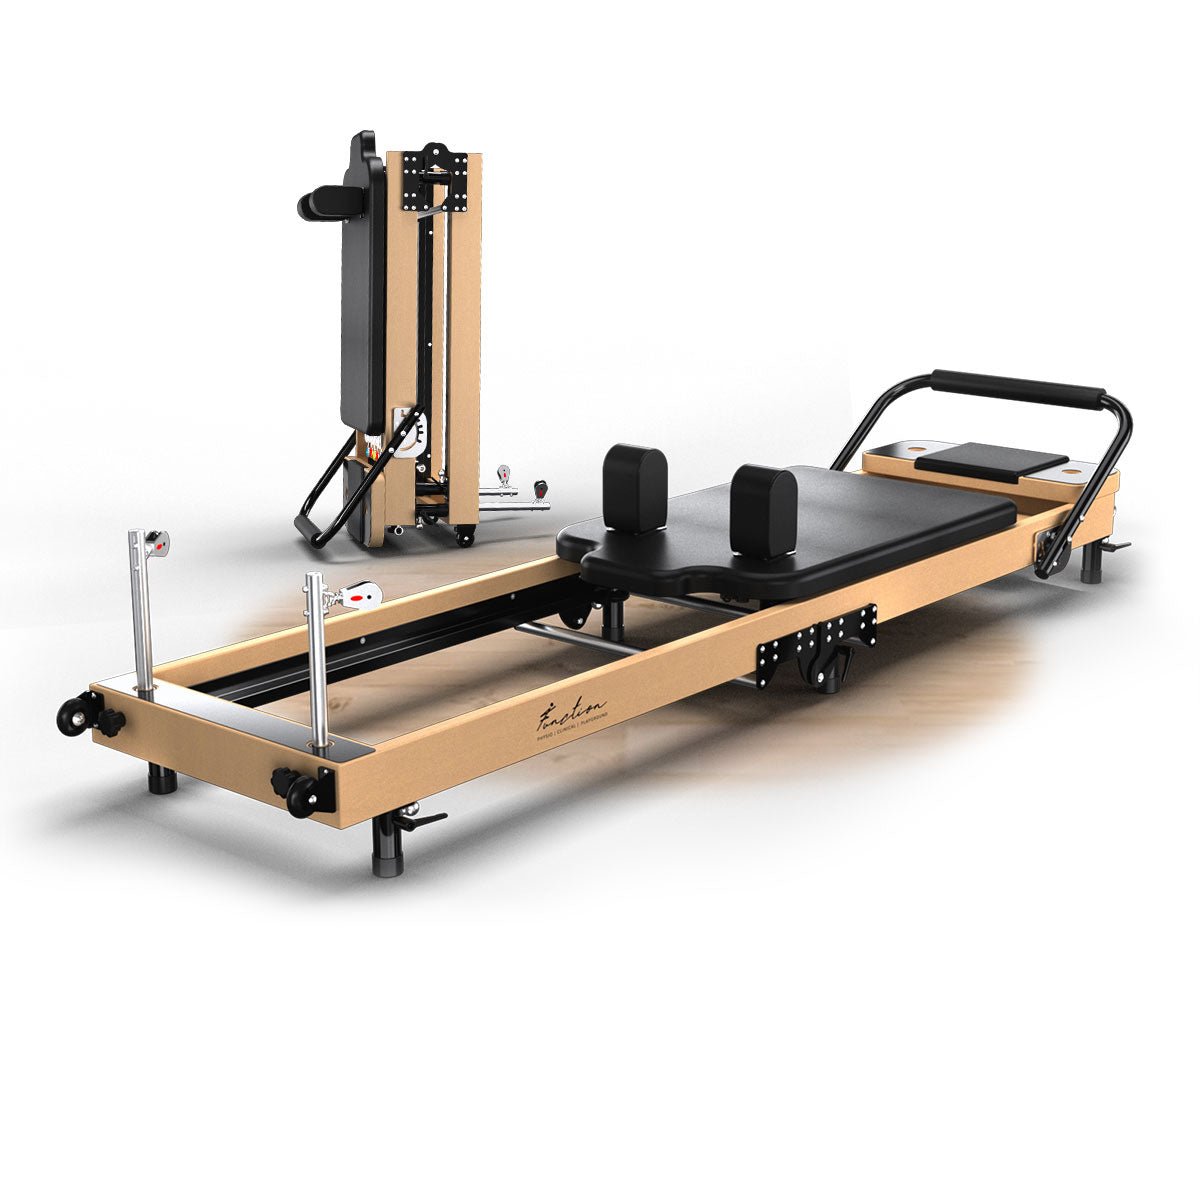  Reformer Pilates Machine for Beginner ,Foldable